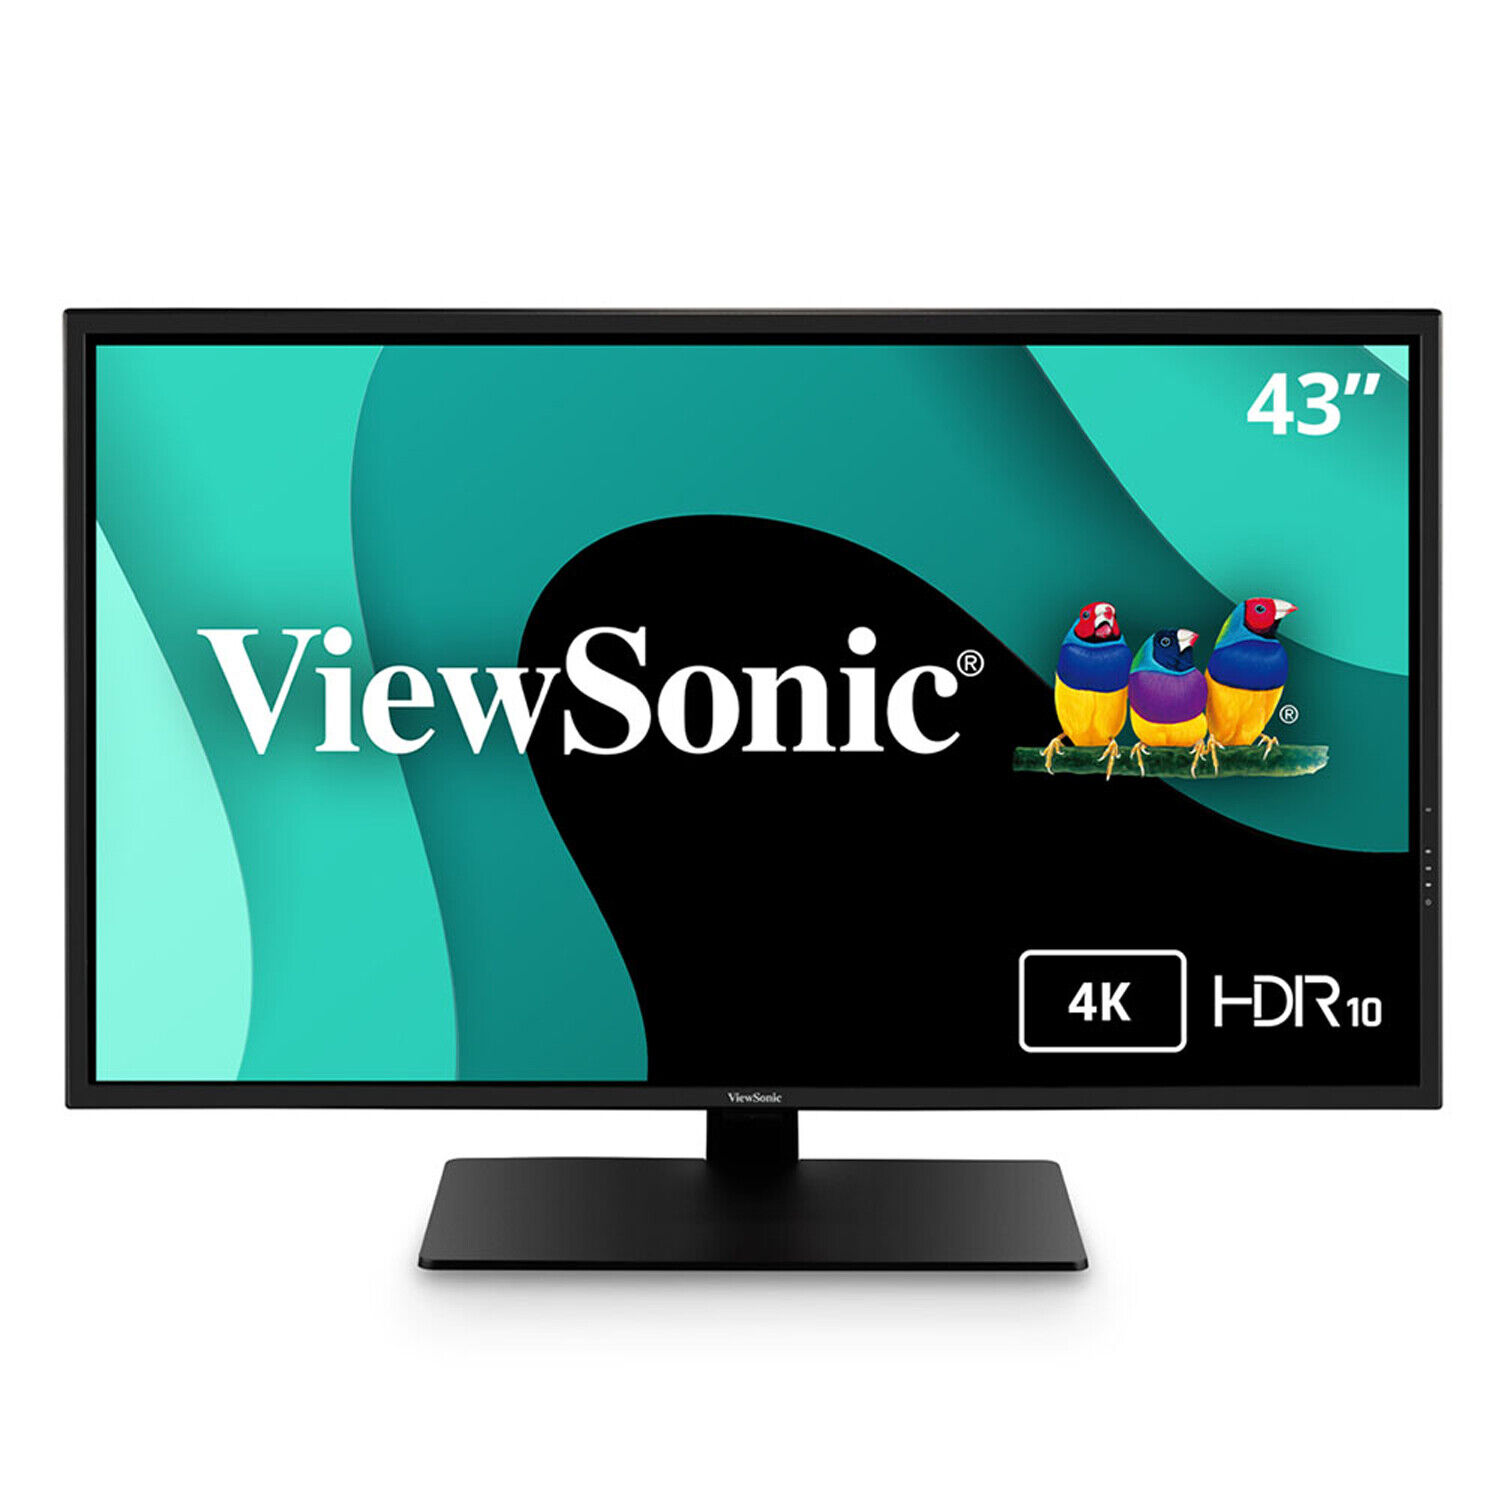 ViewSonic  4K UHD IPS Monitor VX4381-4K 43